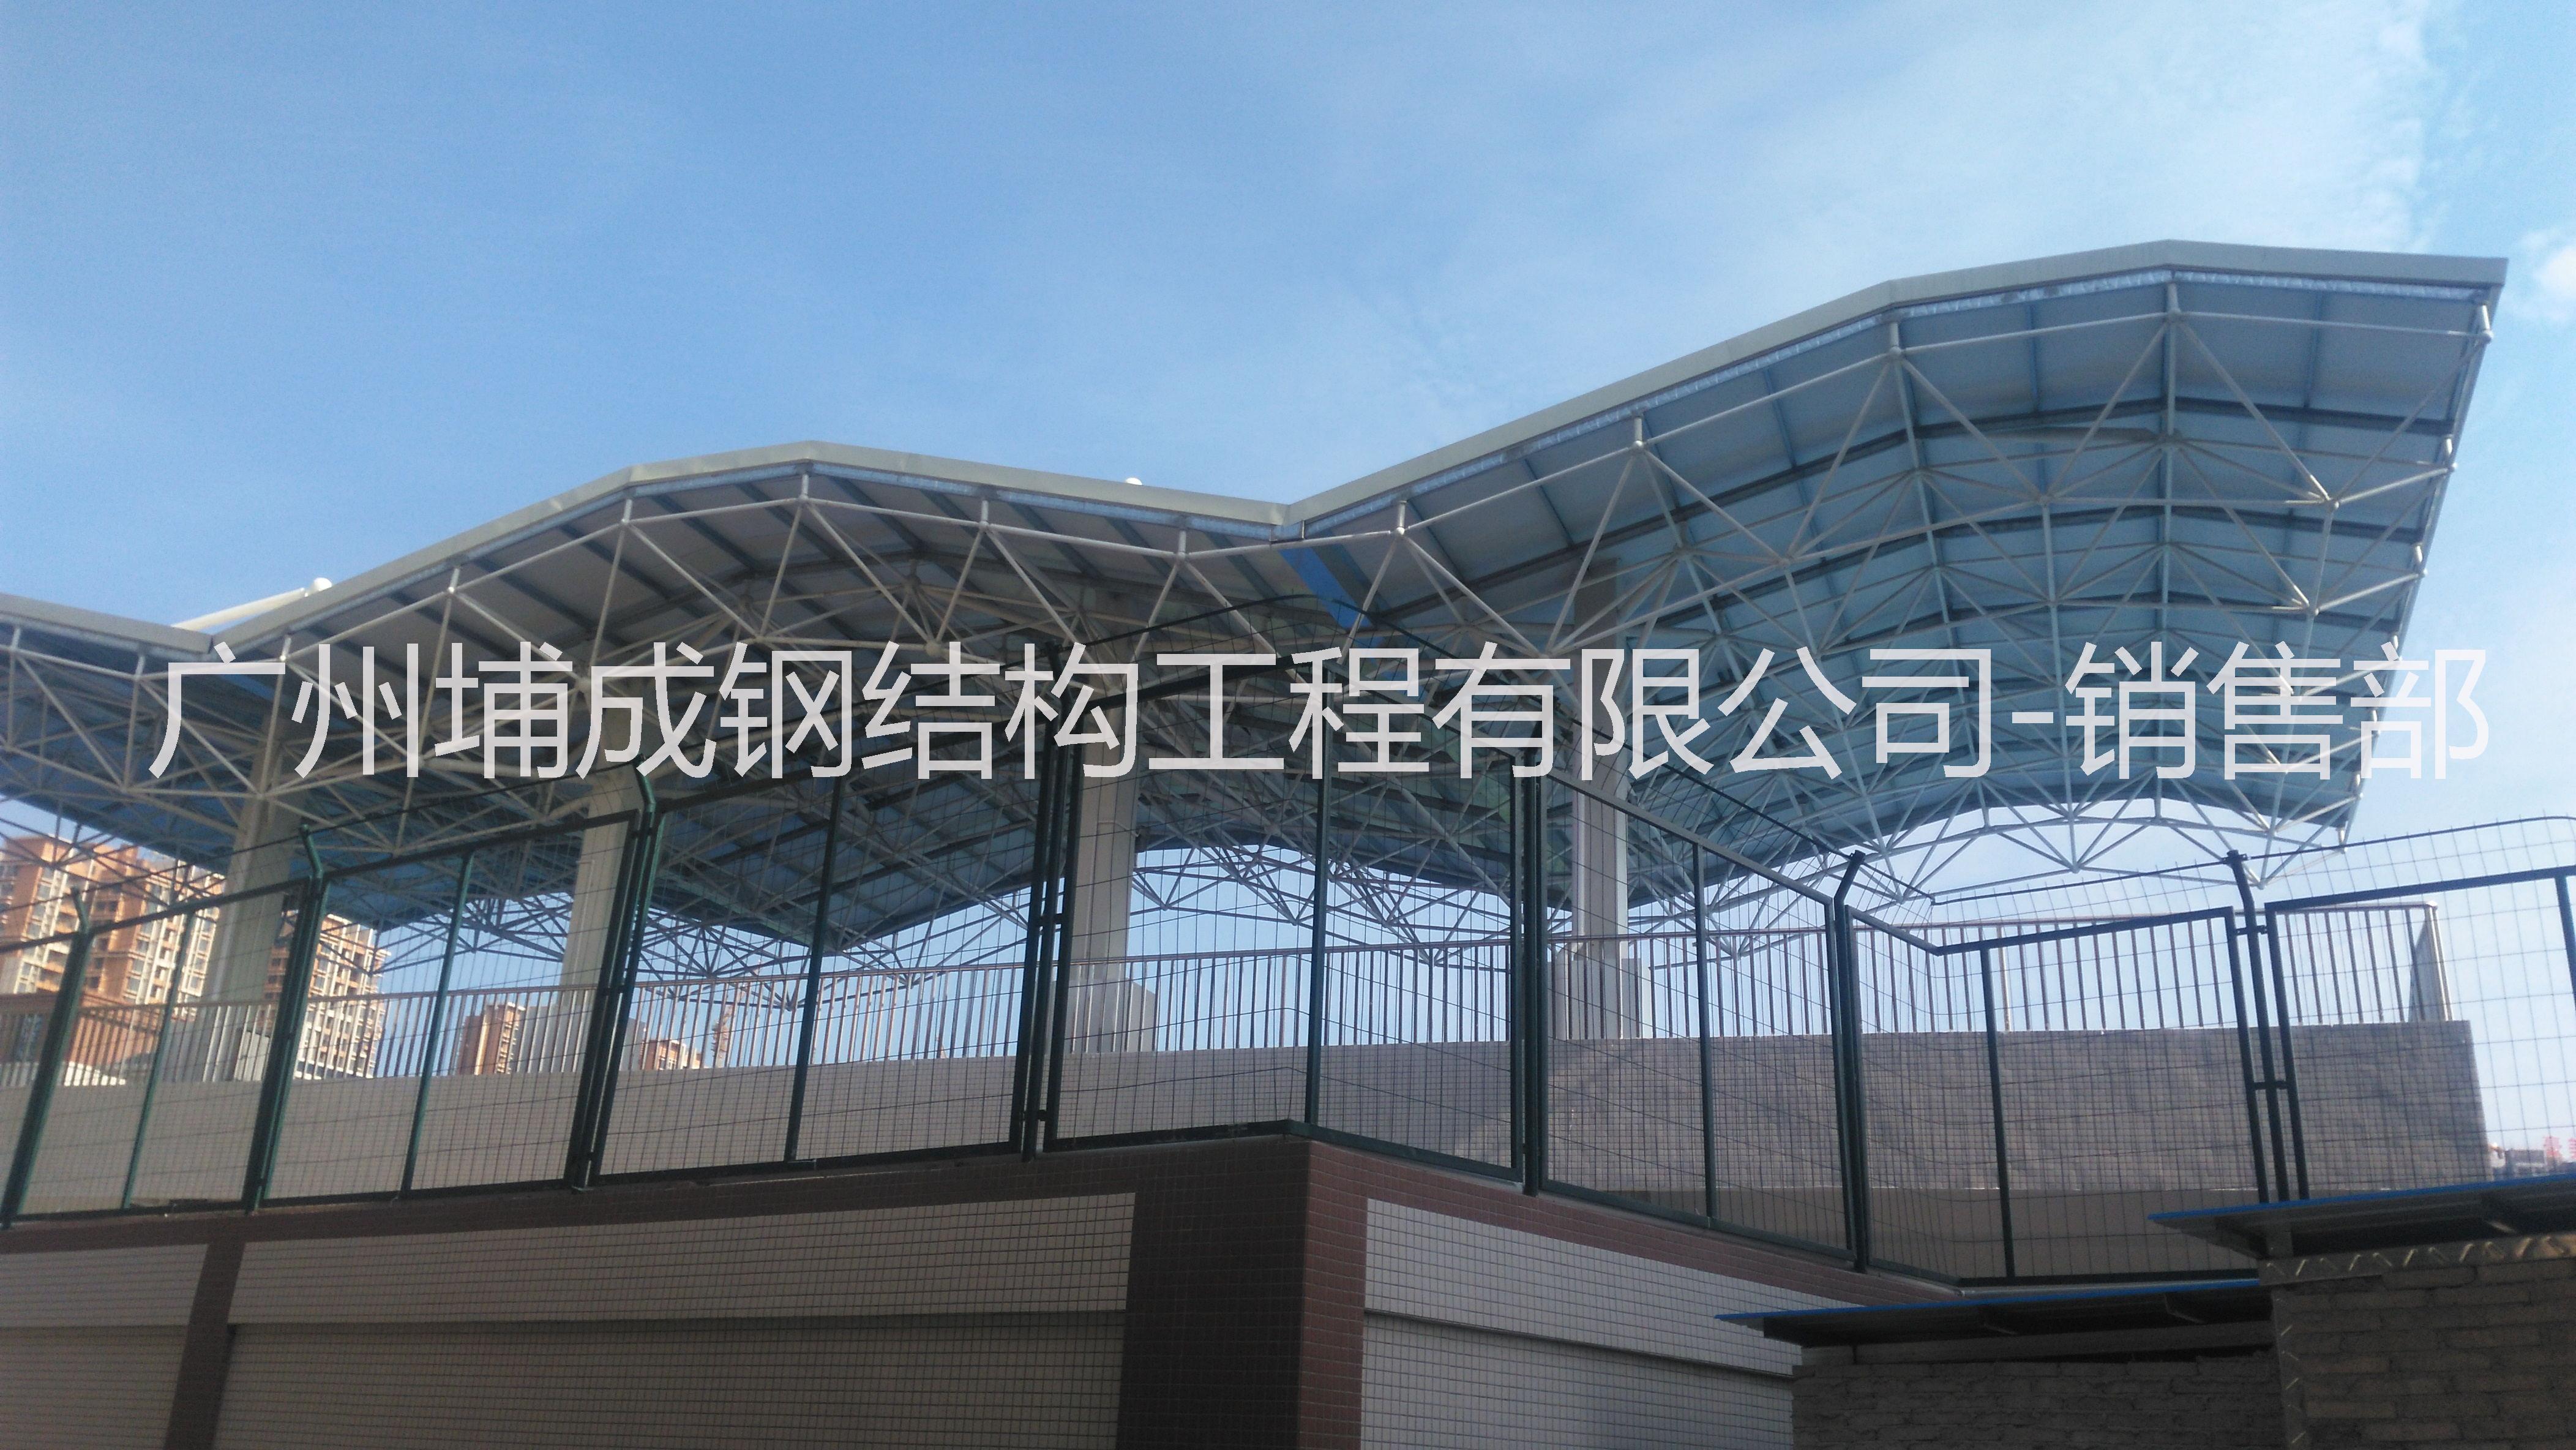 广州大型体育馆钢网架加工安装 广州学校风雨操场网架工程